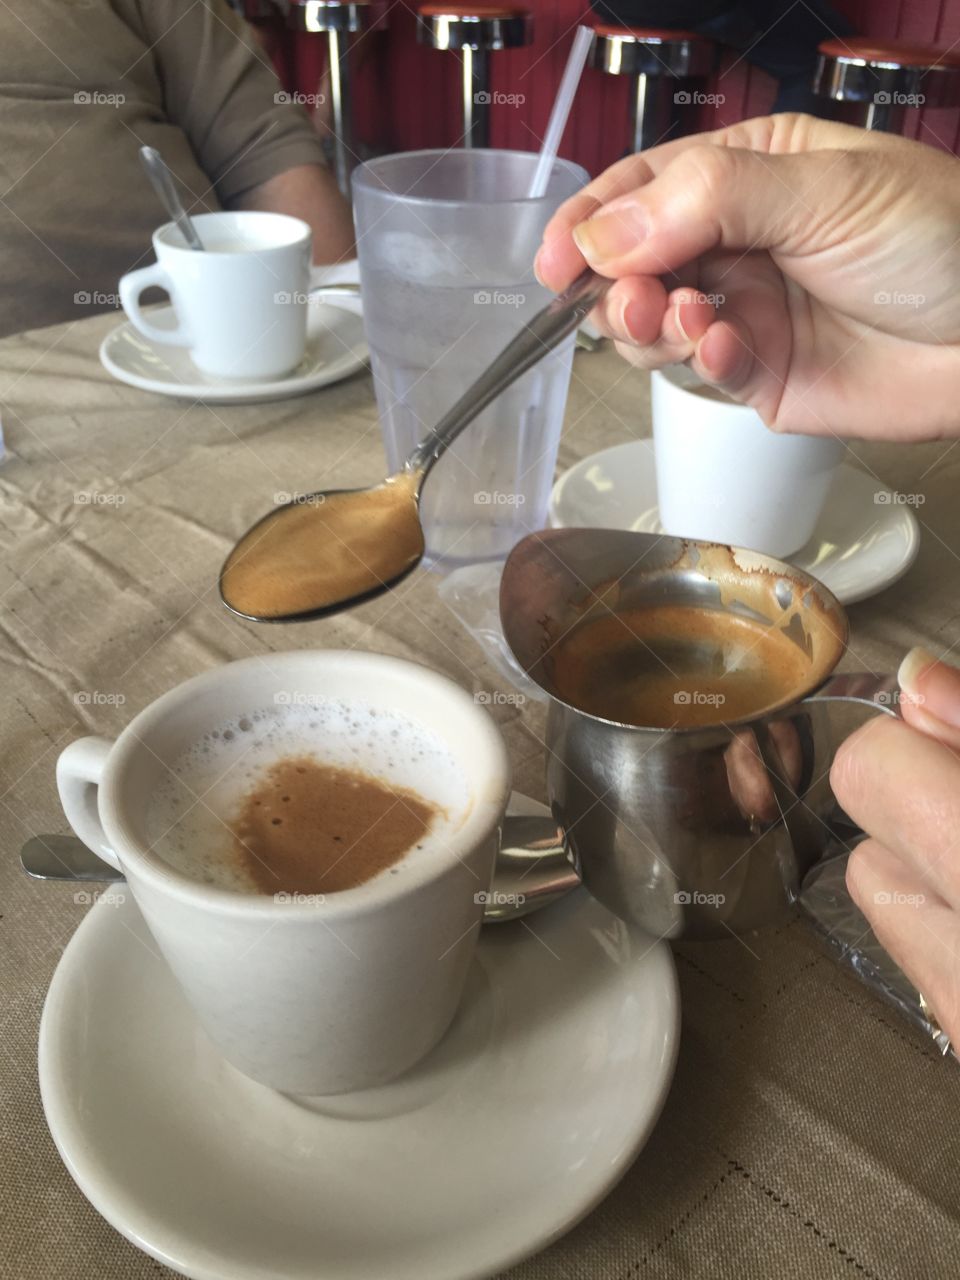 Cuban Coffee